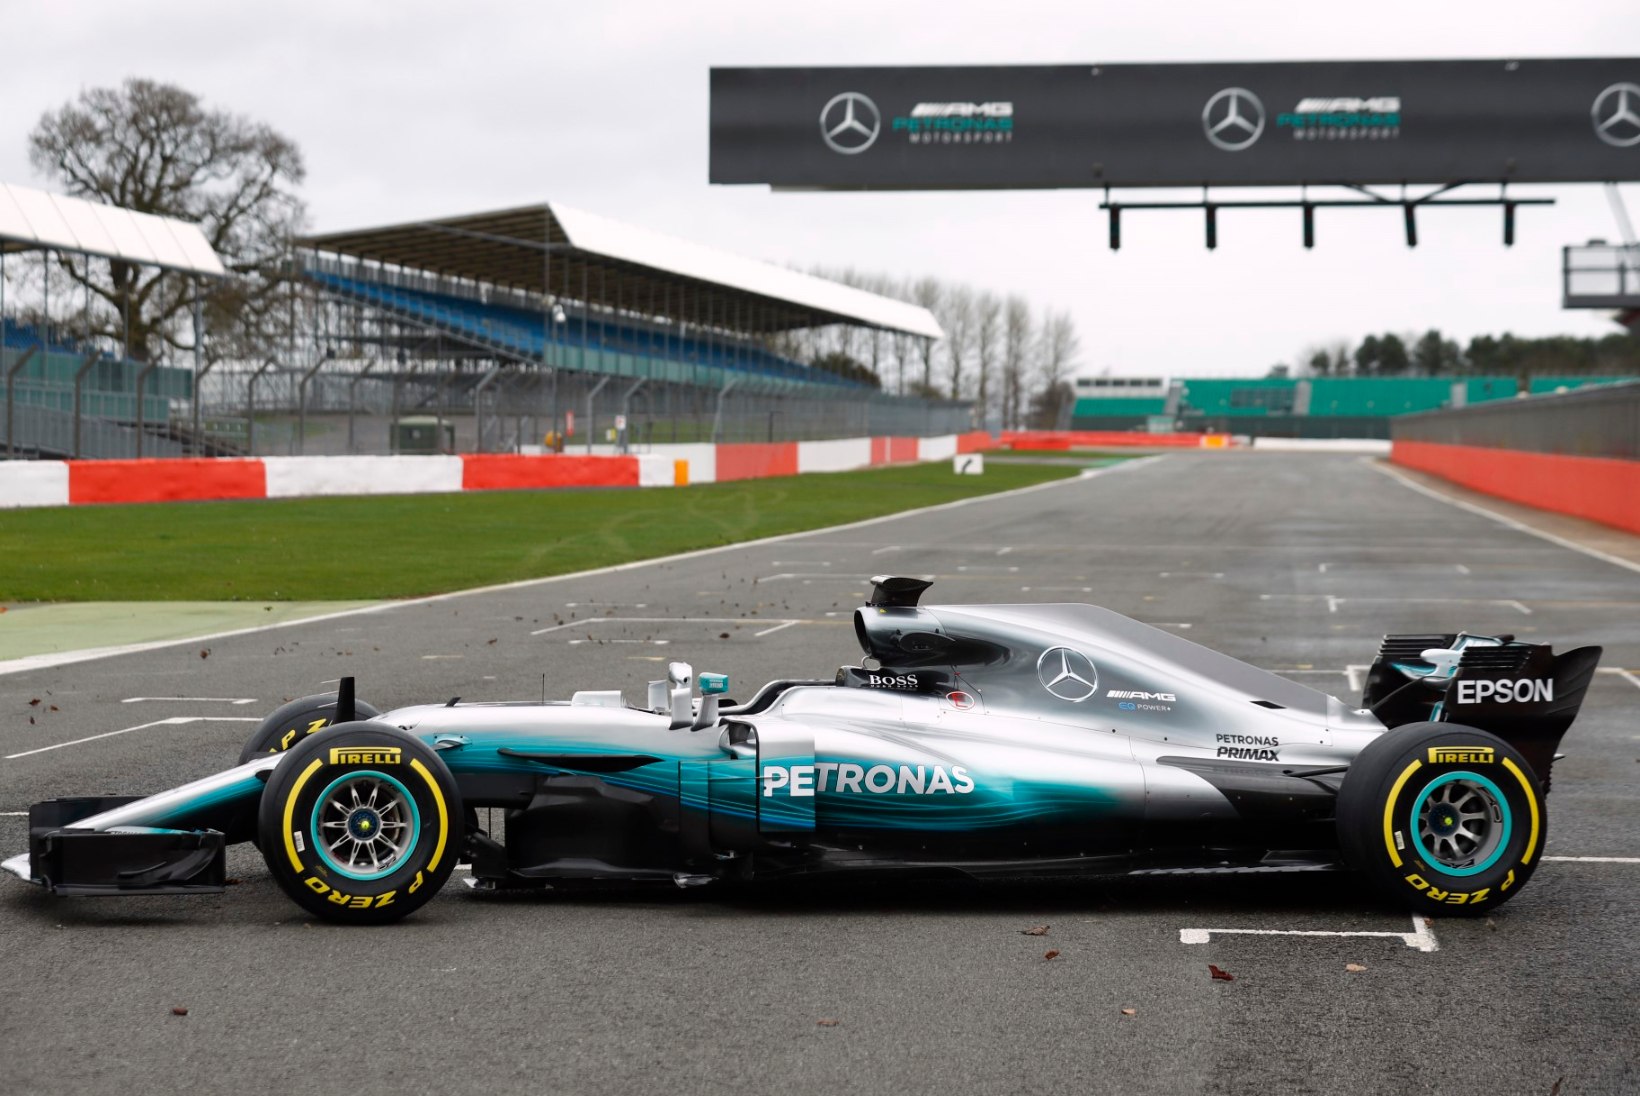 FOTOD | Mercedes ajas uue vormeli garaažist välja!